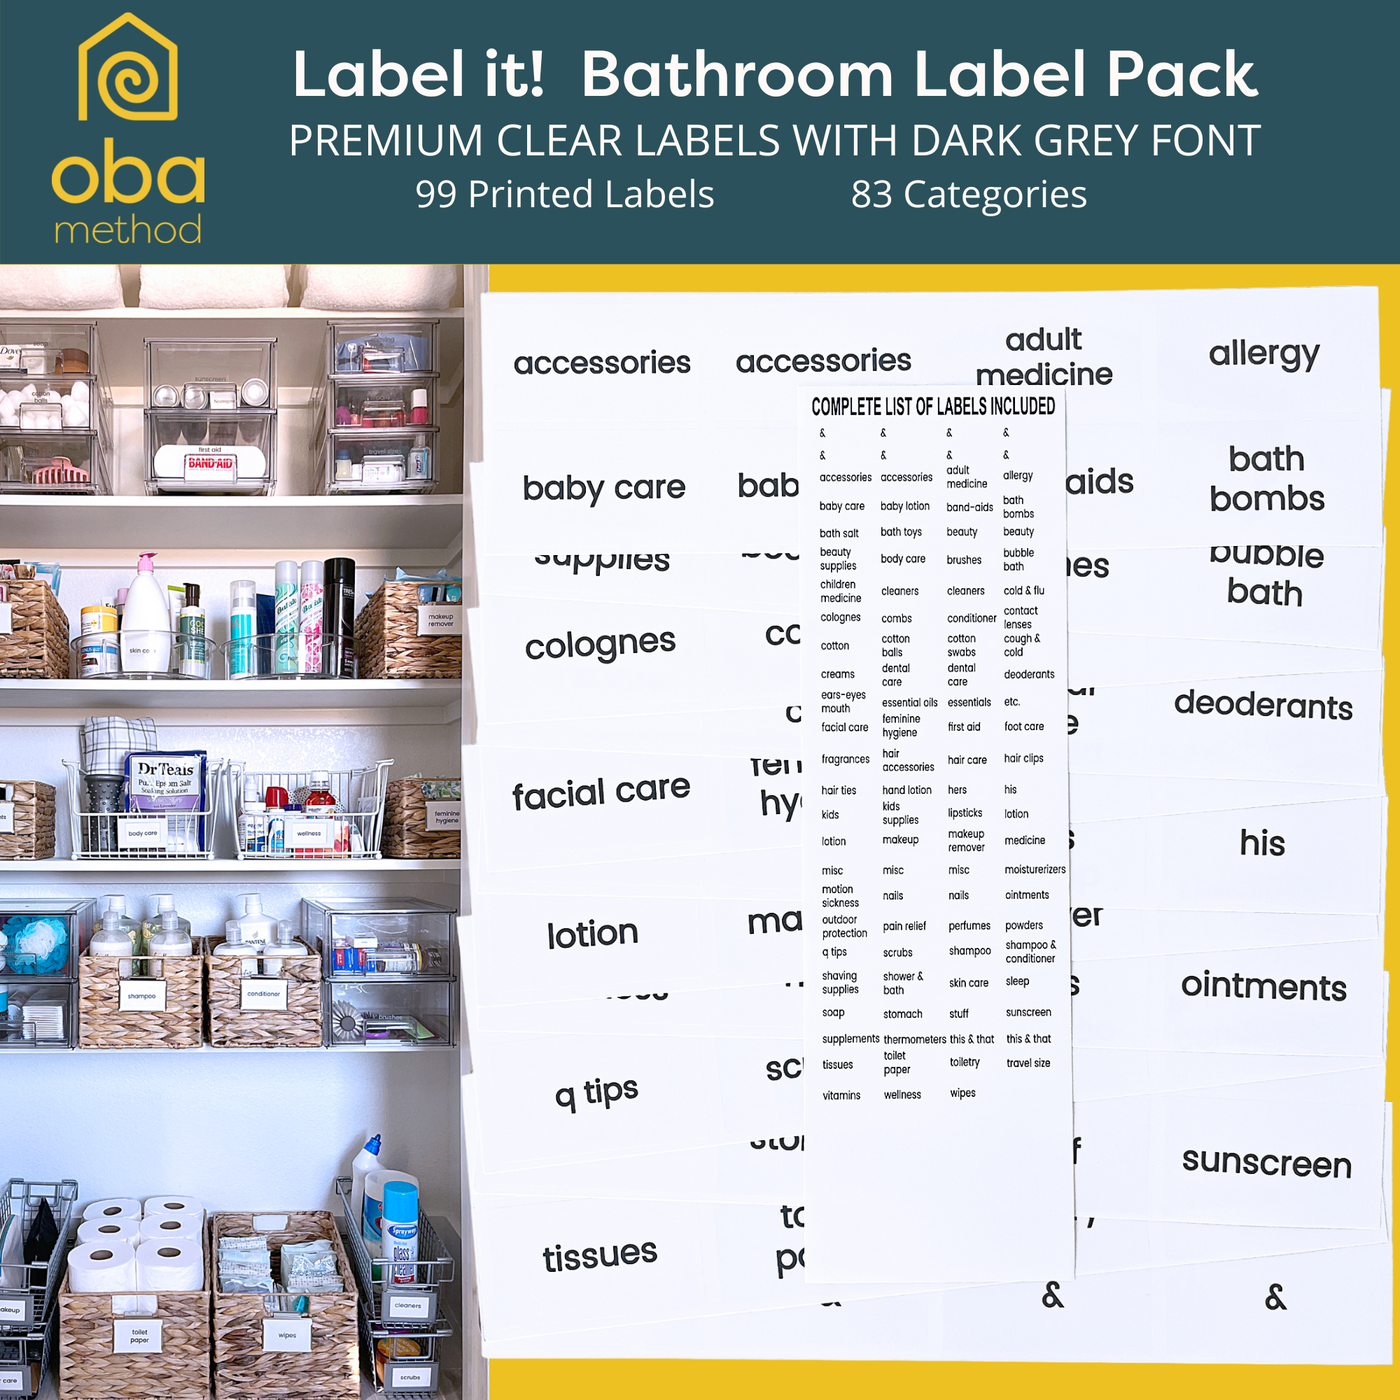 Bathroom organization labels